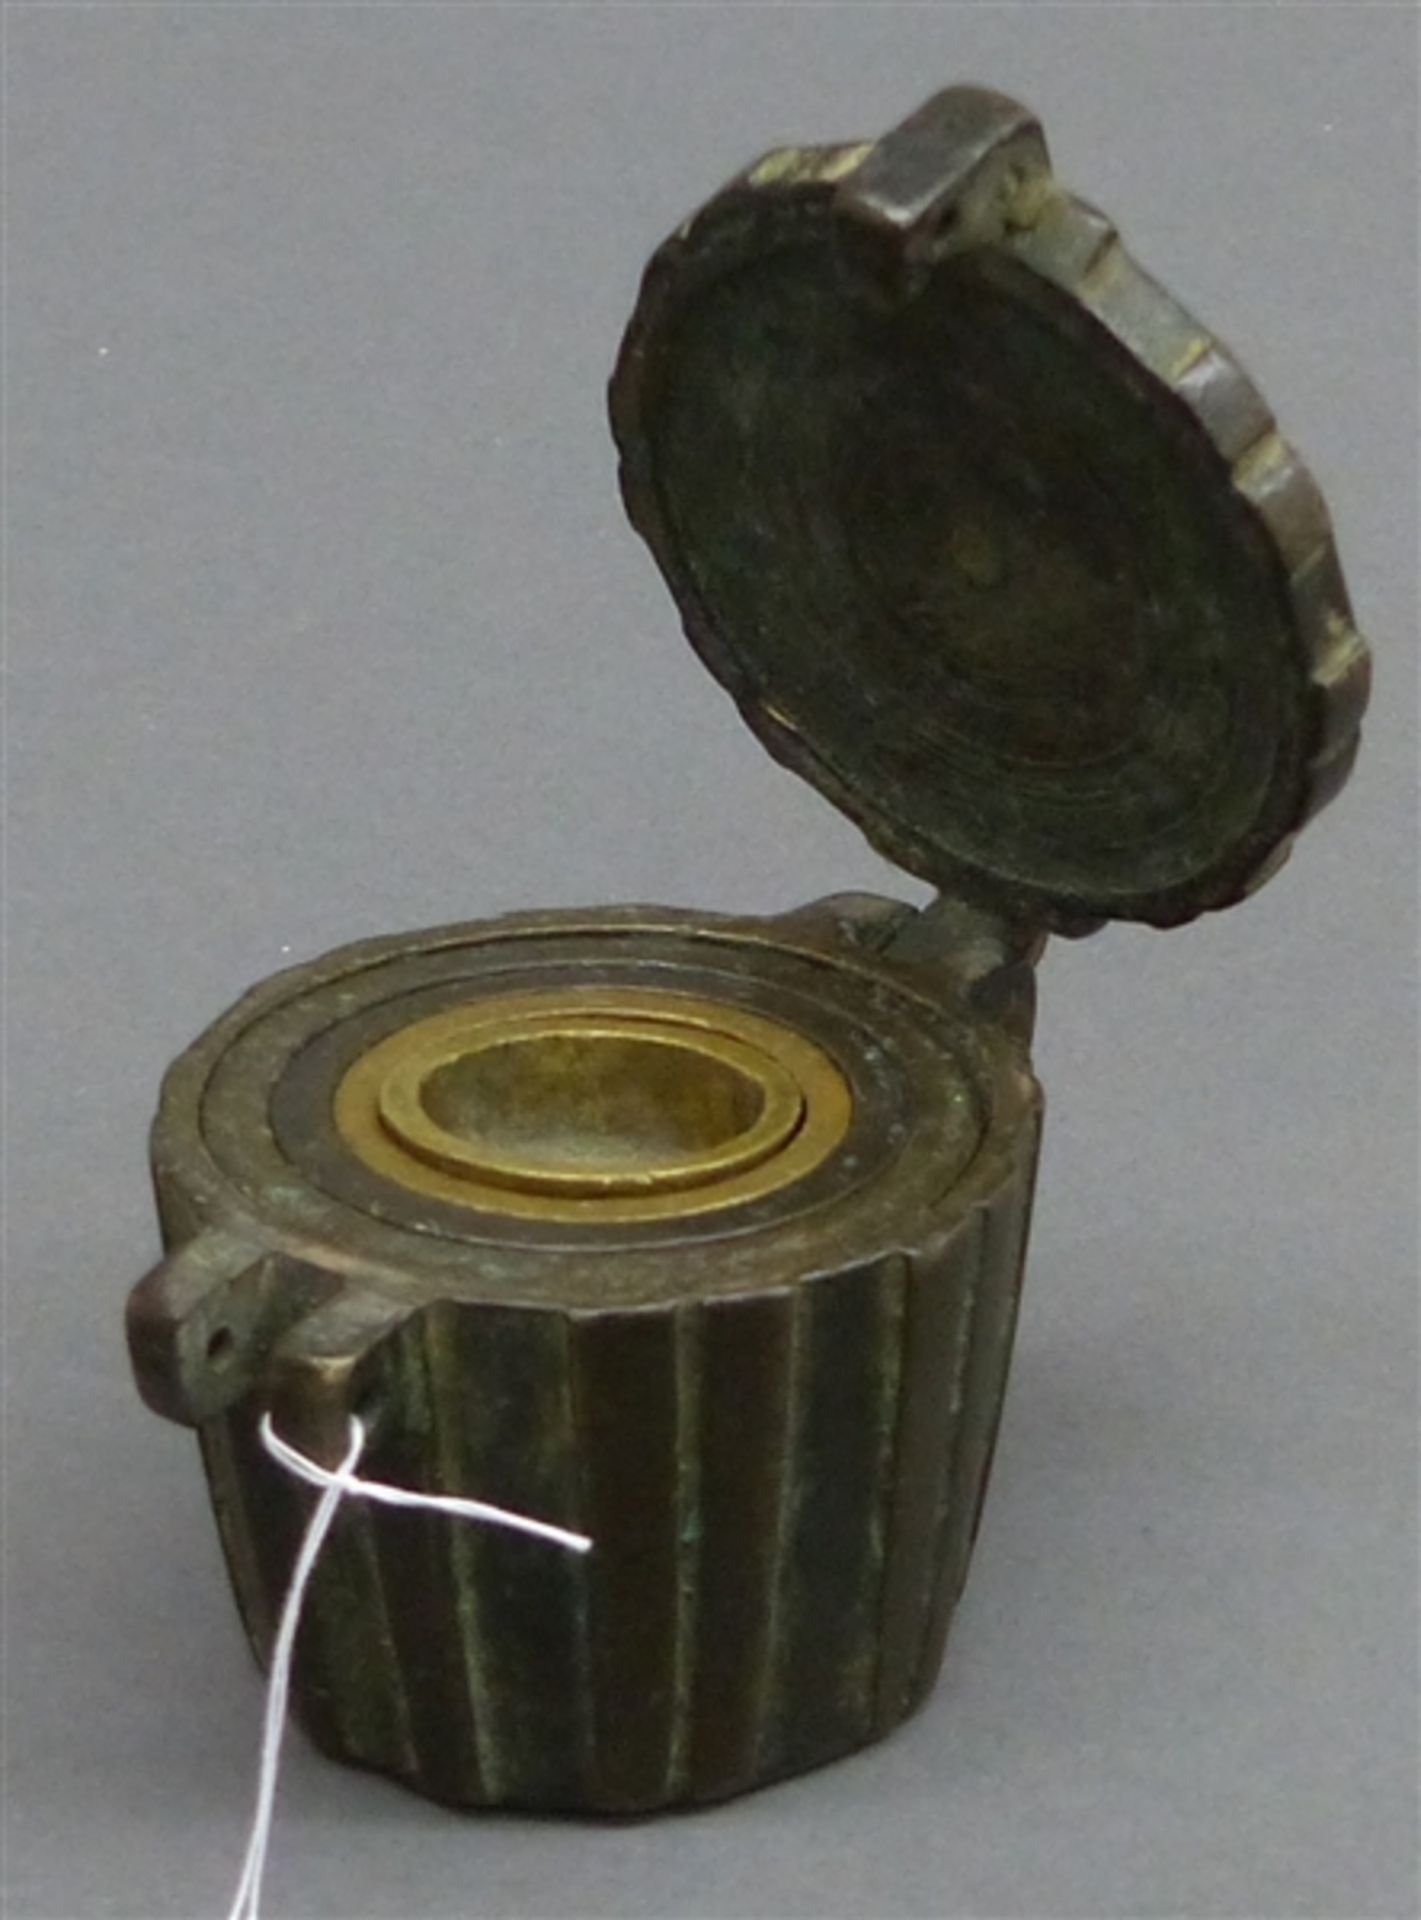 Gewichtssatz Gelbmetall, aufklappbar, um 1800, nicht vollständig, h 5,5 cm,